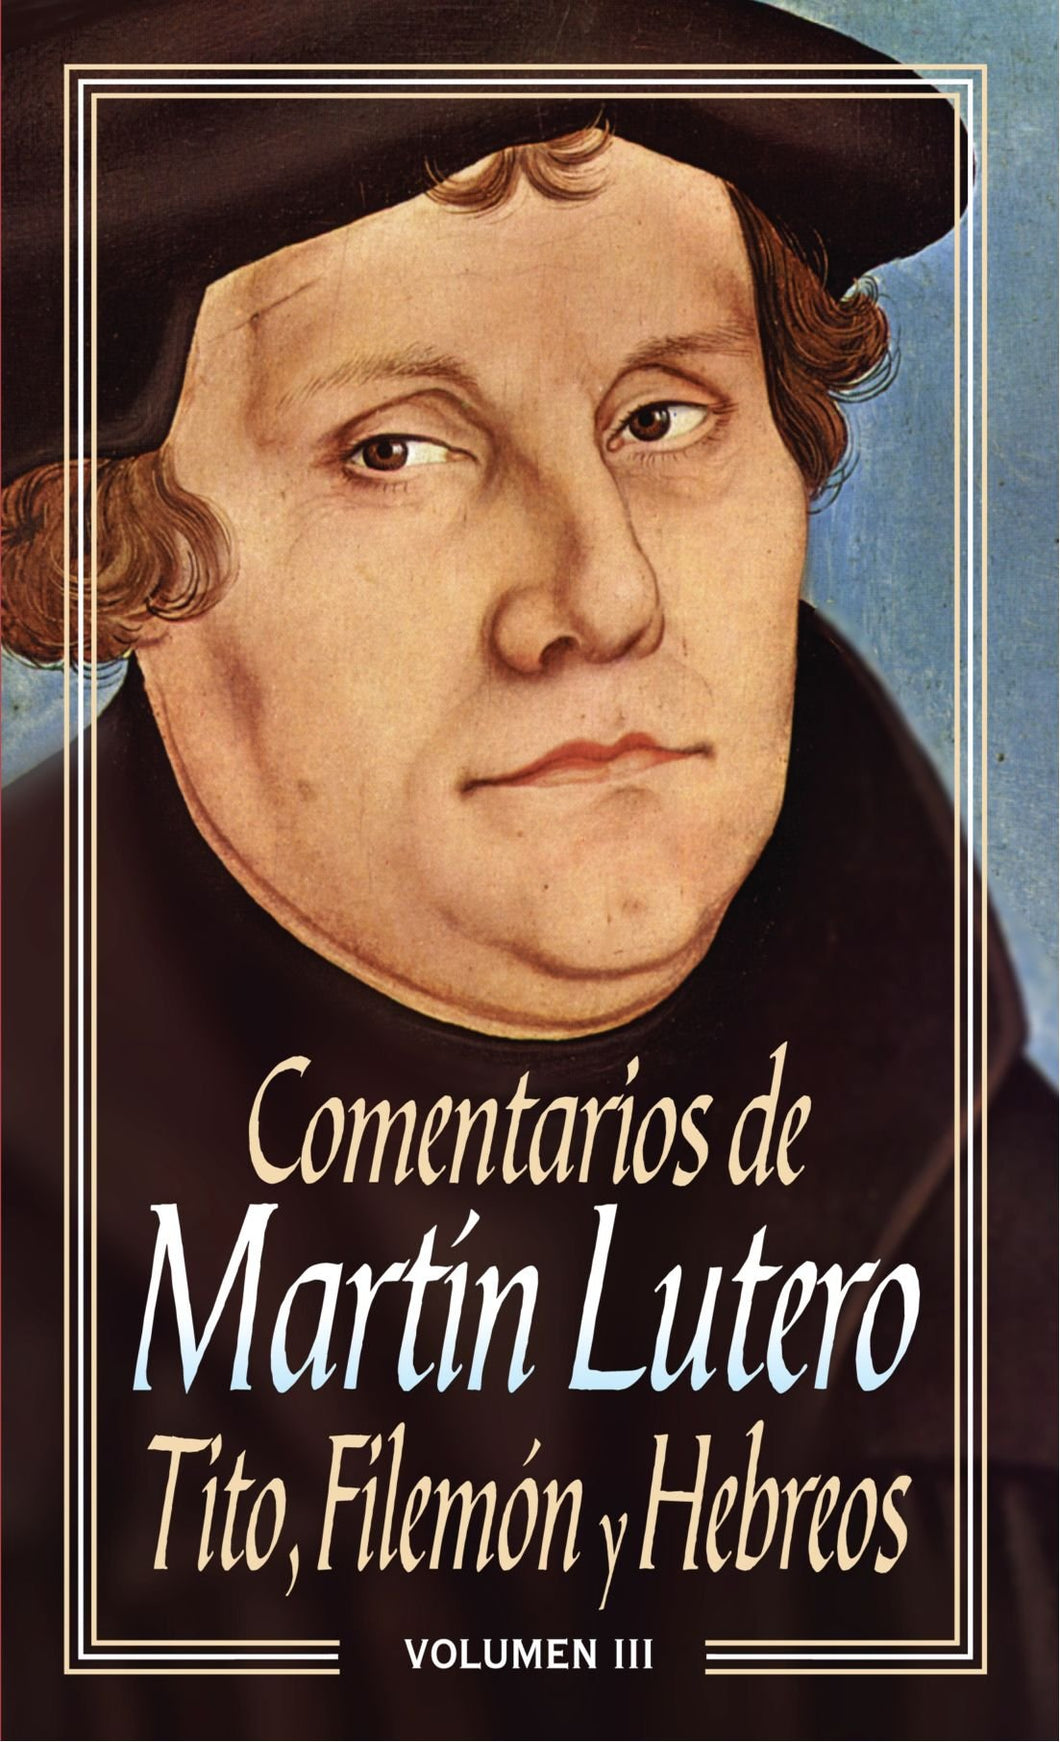 Comentarios de Martín Lutero III-Tito, Filemón y Hebreos by Editorial Clie